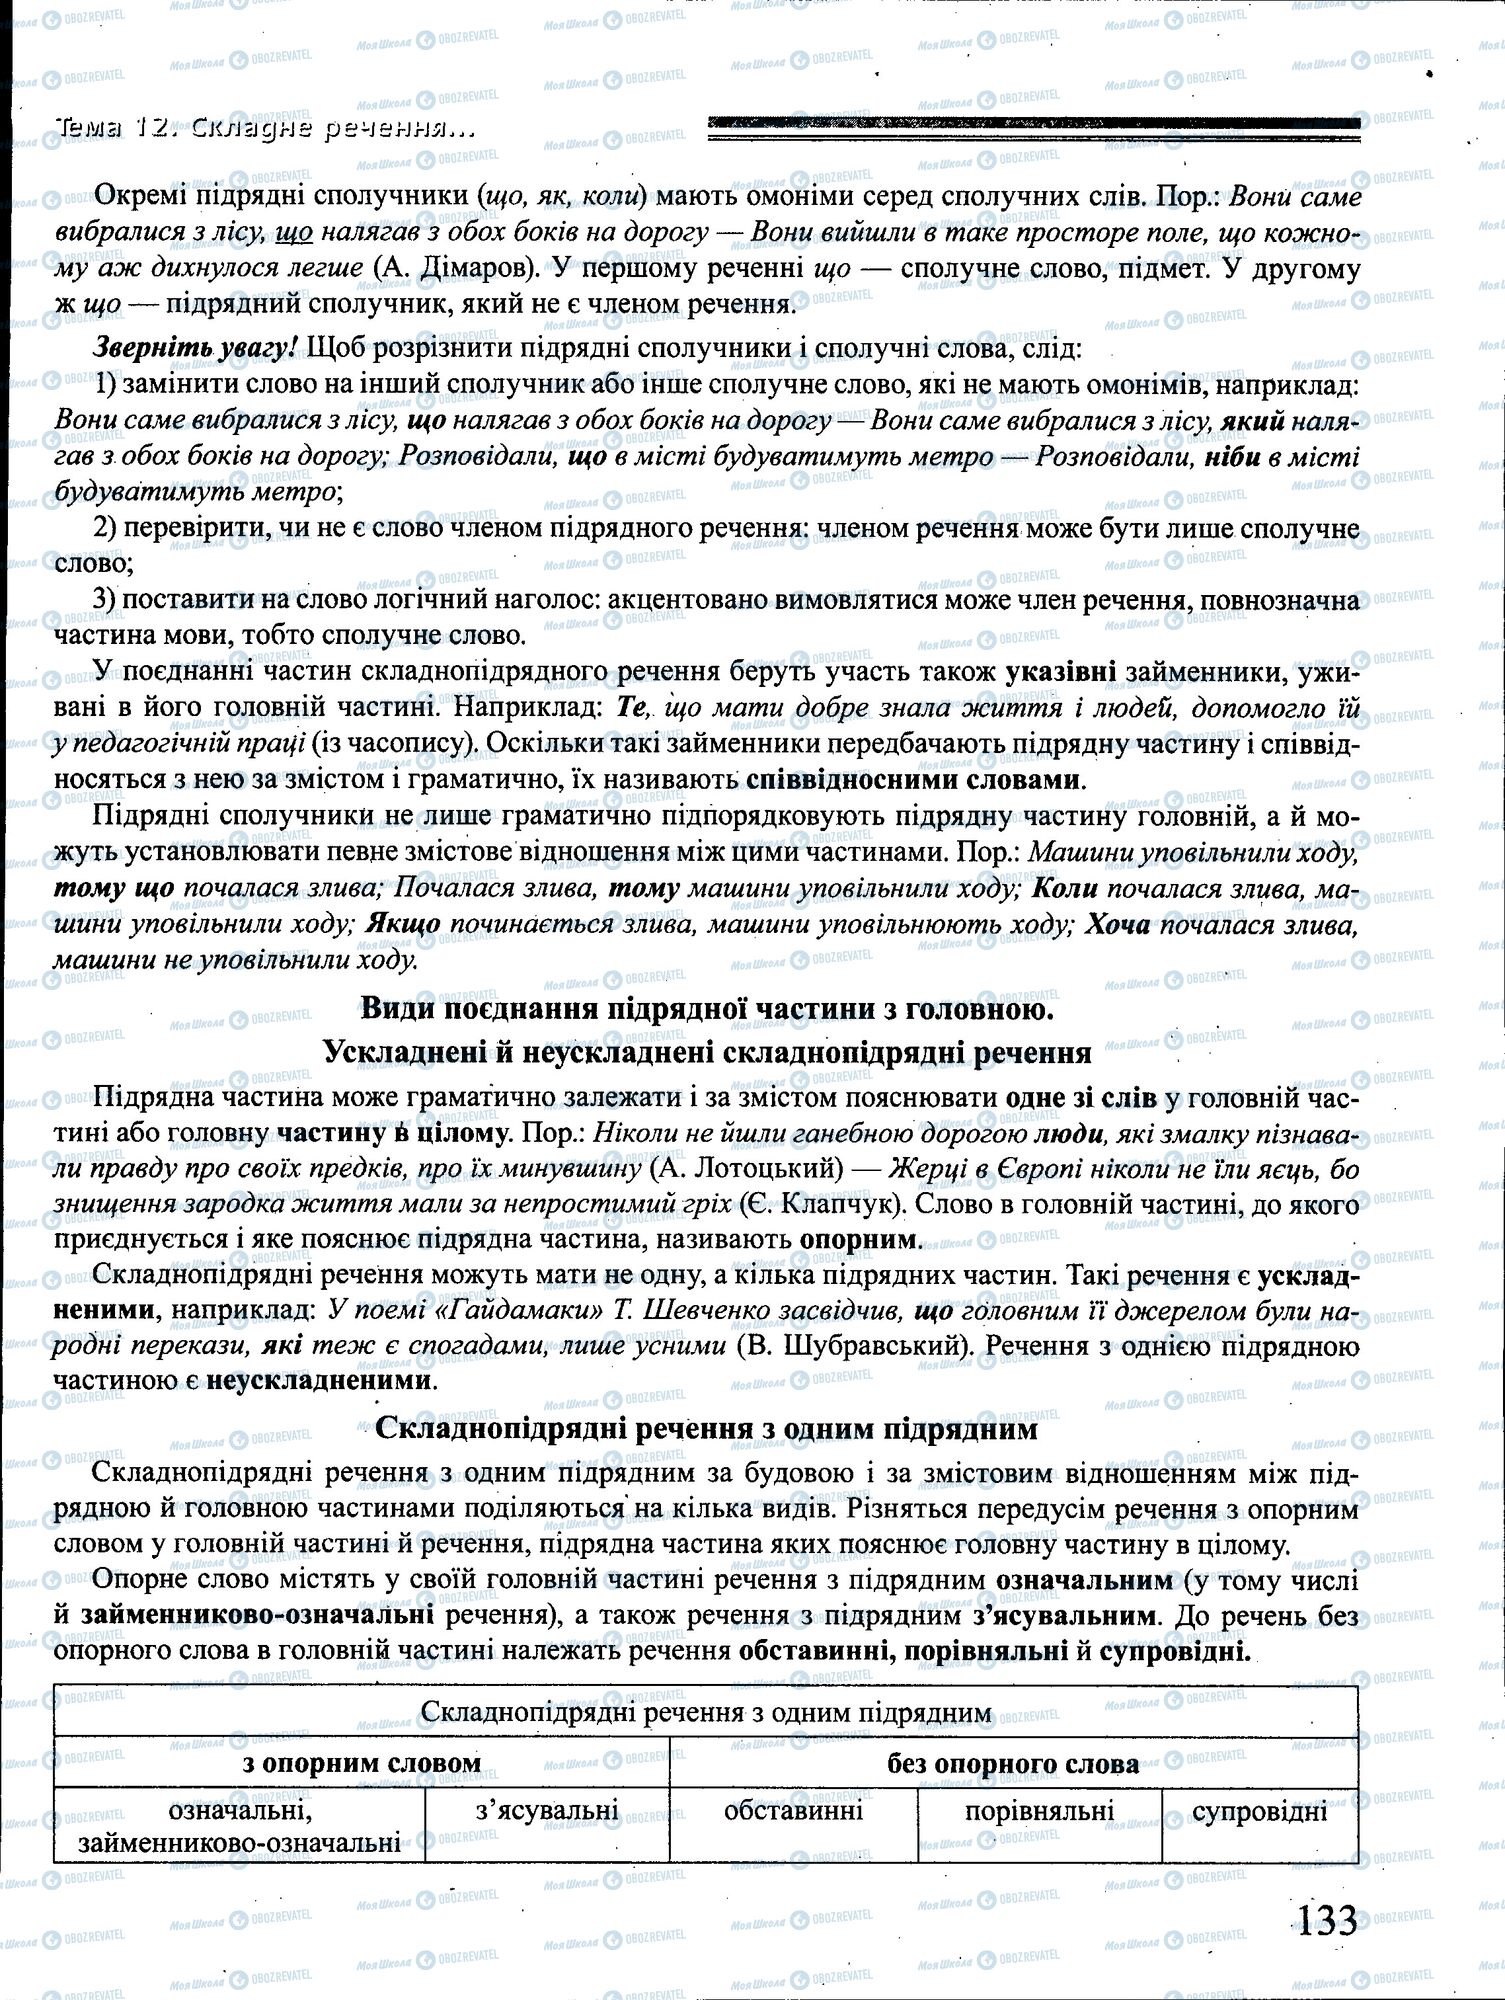 ДПА Укр мова 4 класс страница 133